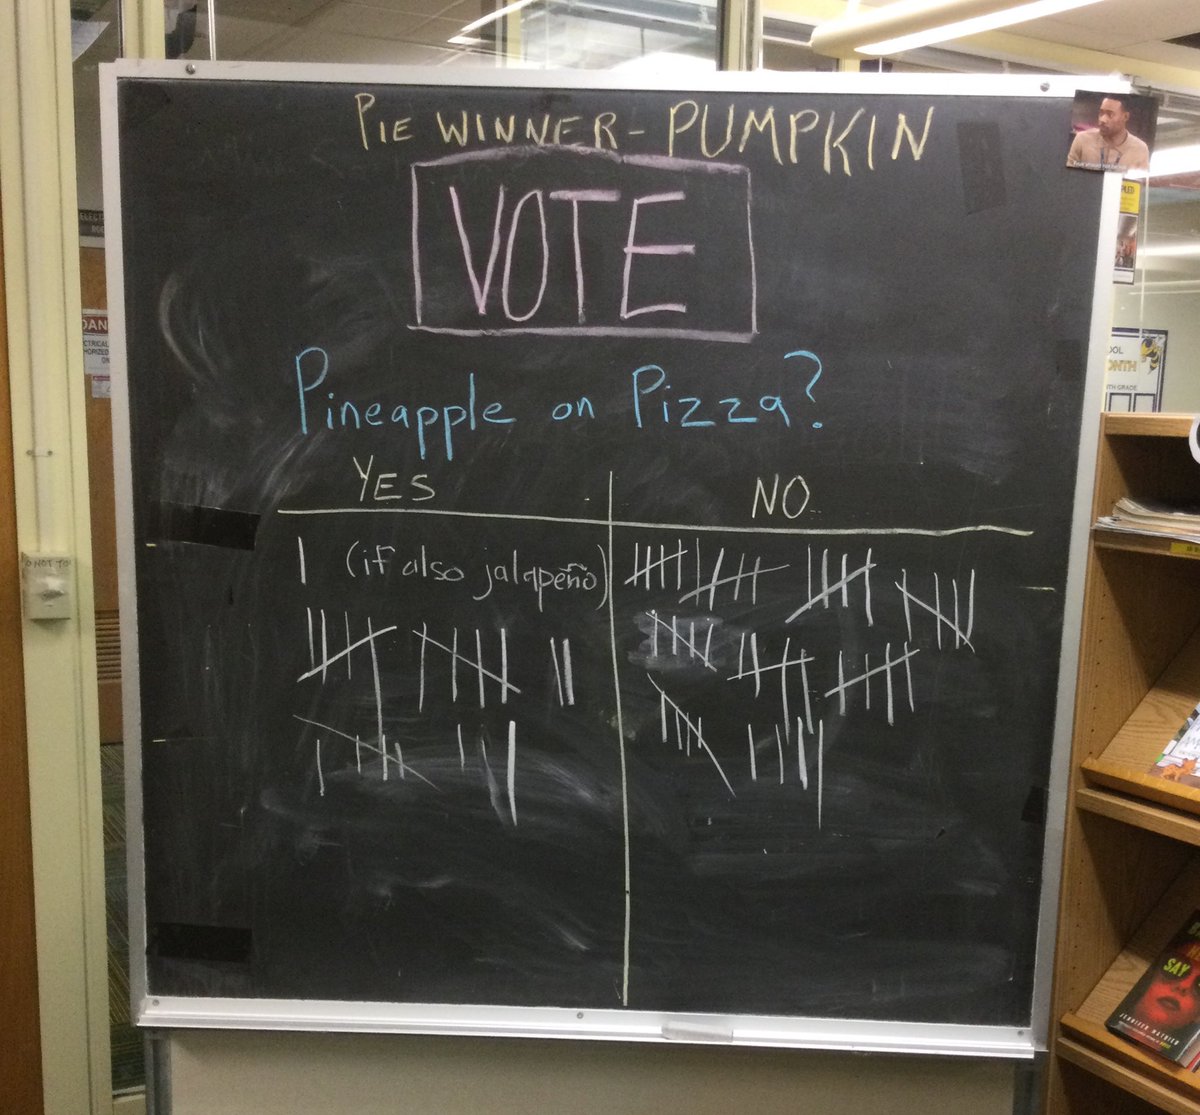 杰斐遜的學生和教職工對披薩上的菠蘿有著強烈的感情。 上週的民意調查獲勝者是南瓜，它是我們黃夾克最喜歡的餡餅。 @APSLibrarians @JeffersonIBMYP https://t.co/IKkWDI8ZzK